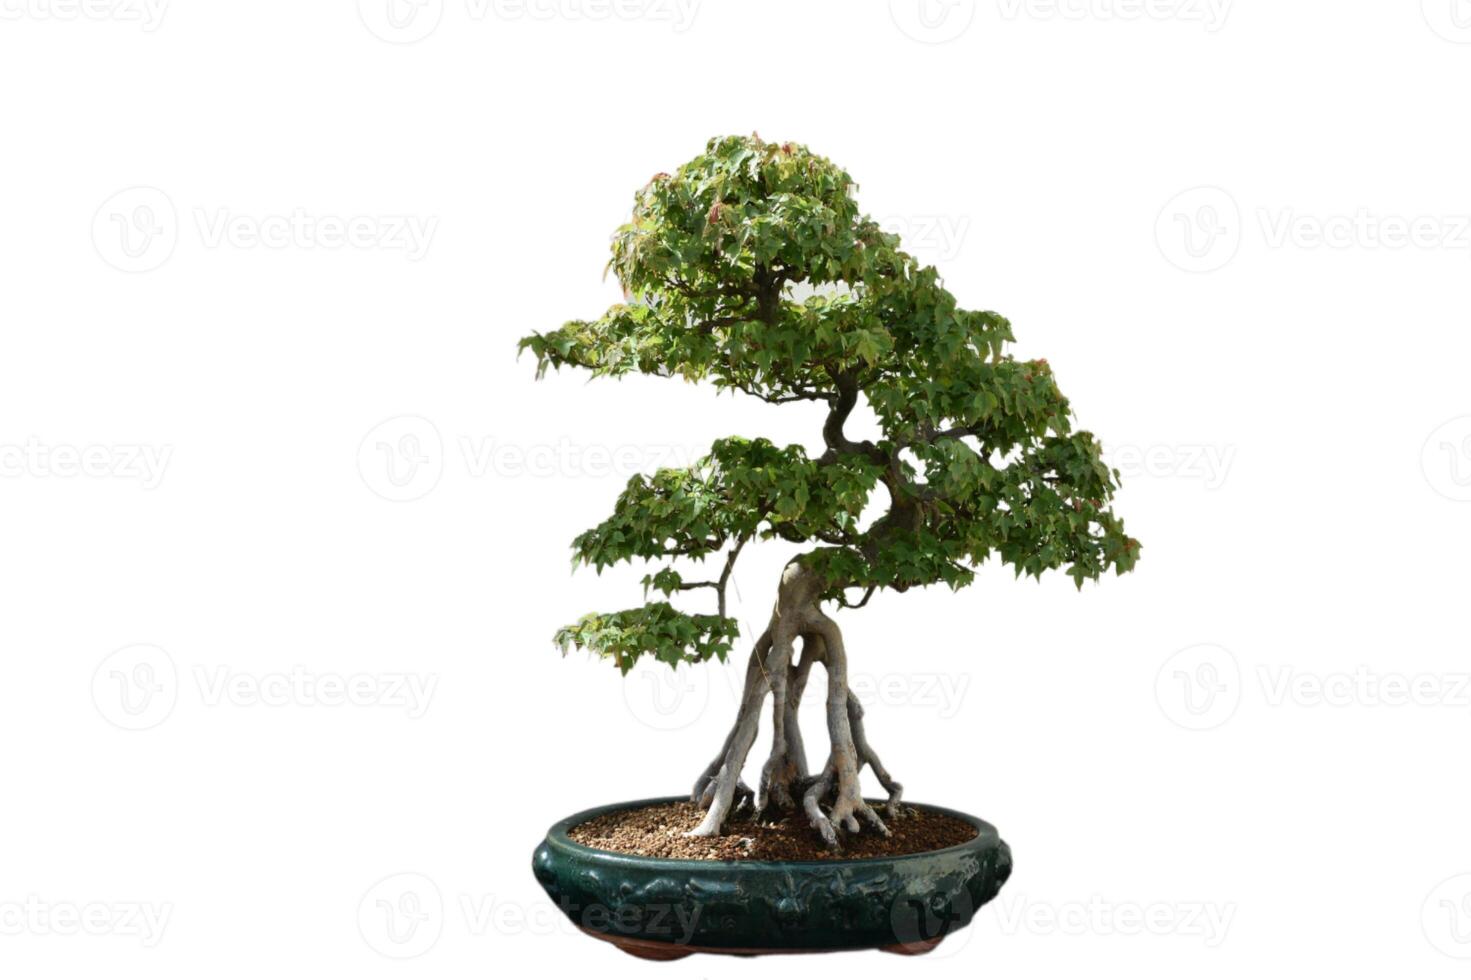 mycket liten knappträ bonsai träd formad och skulpterad foto